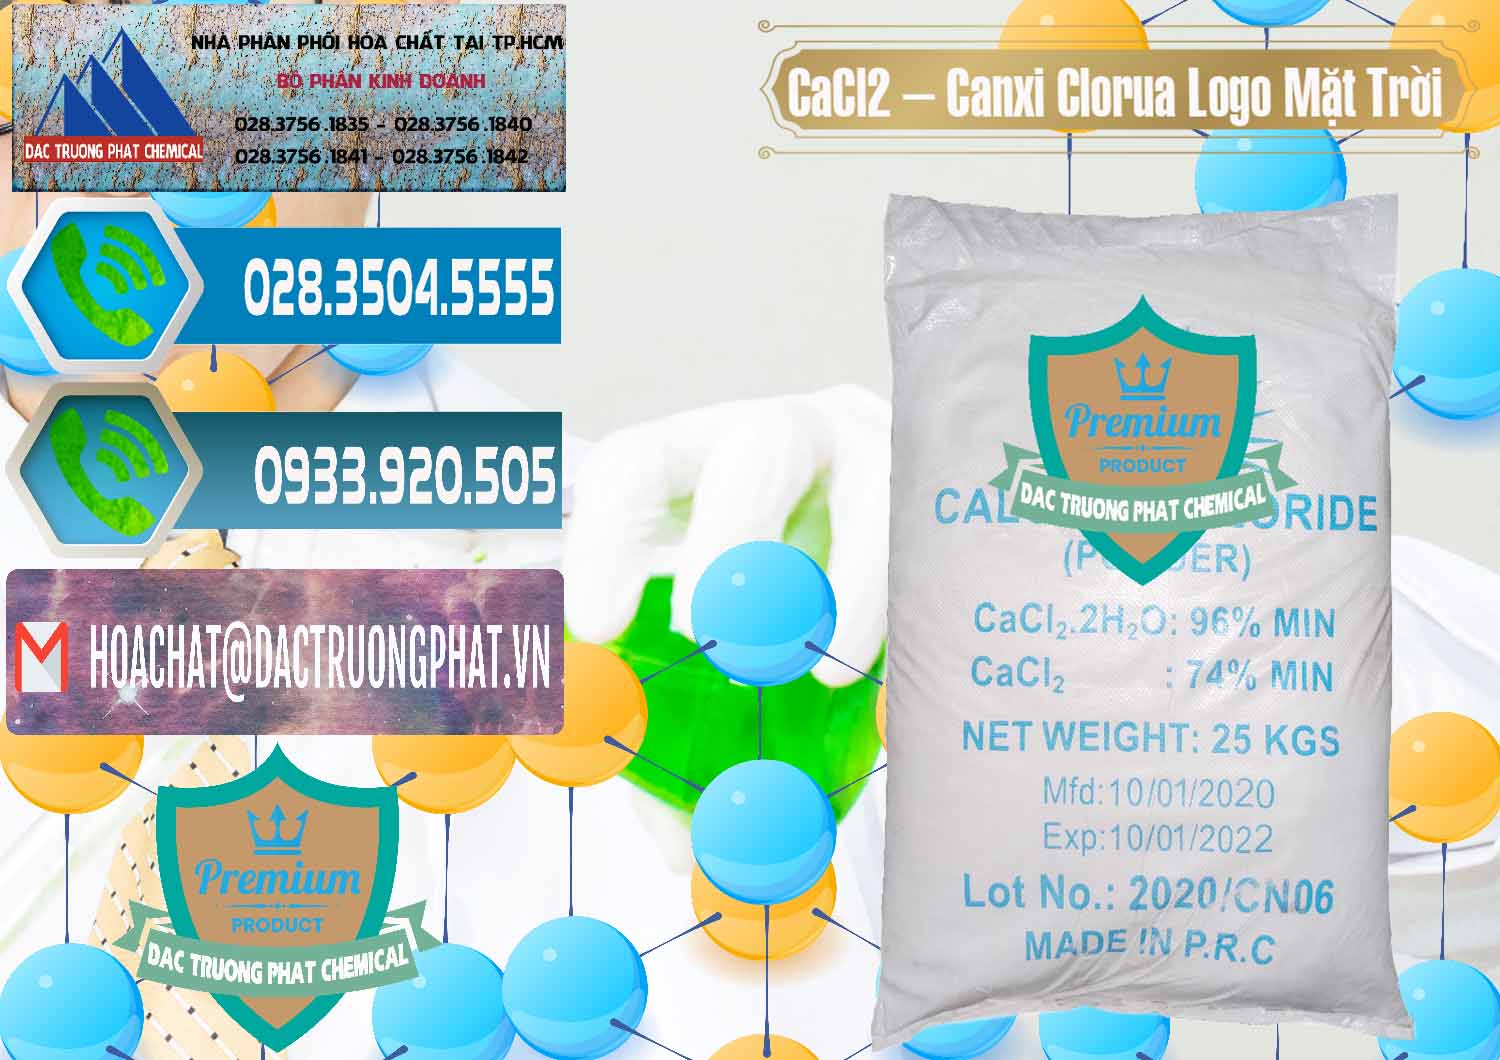 Công ty phân phối ( bán ) CaCl2 – Canxi Clorua 96% Logo Mặt Trời Trung Quốc China - 0041 - Nơi chuyên cung ứng & phân phối hóa chất tại TP.HCM - congtyhoachat.net